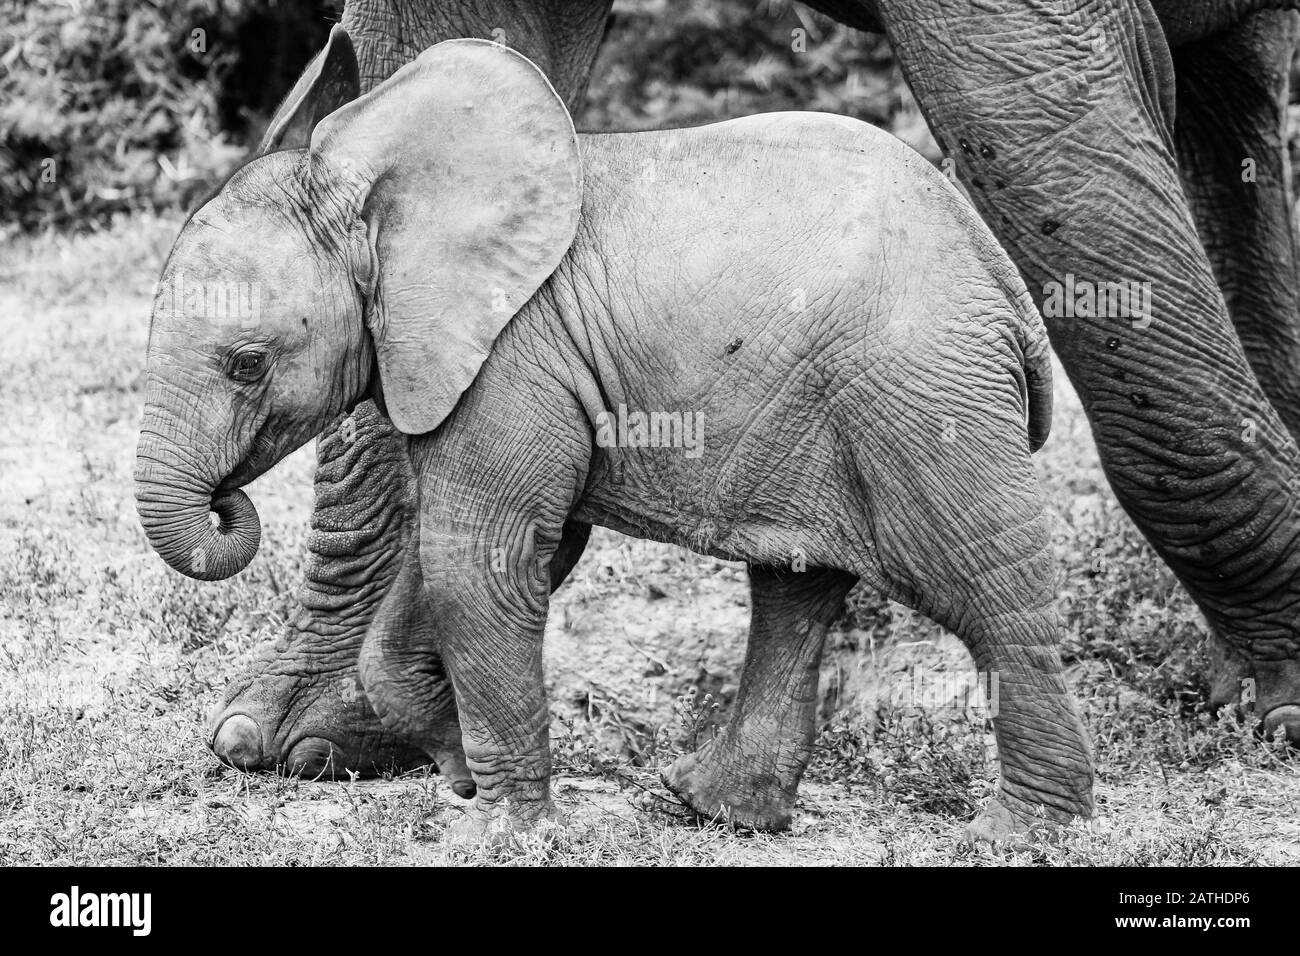 Un retrato de un bebé elefante, blanco y negro, un lindo becerro pone su tronco en su boca, orejas grandes, pies de las madres al lado Foto de stock